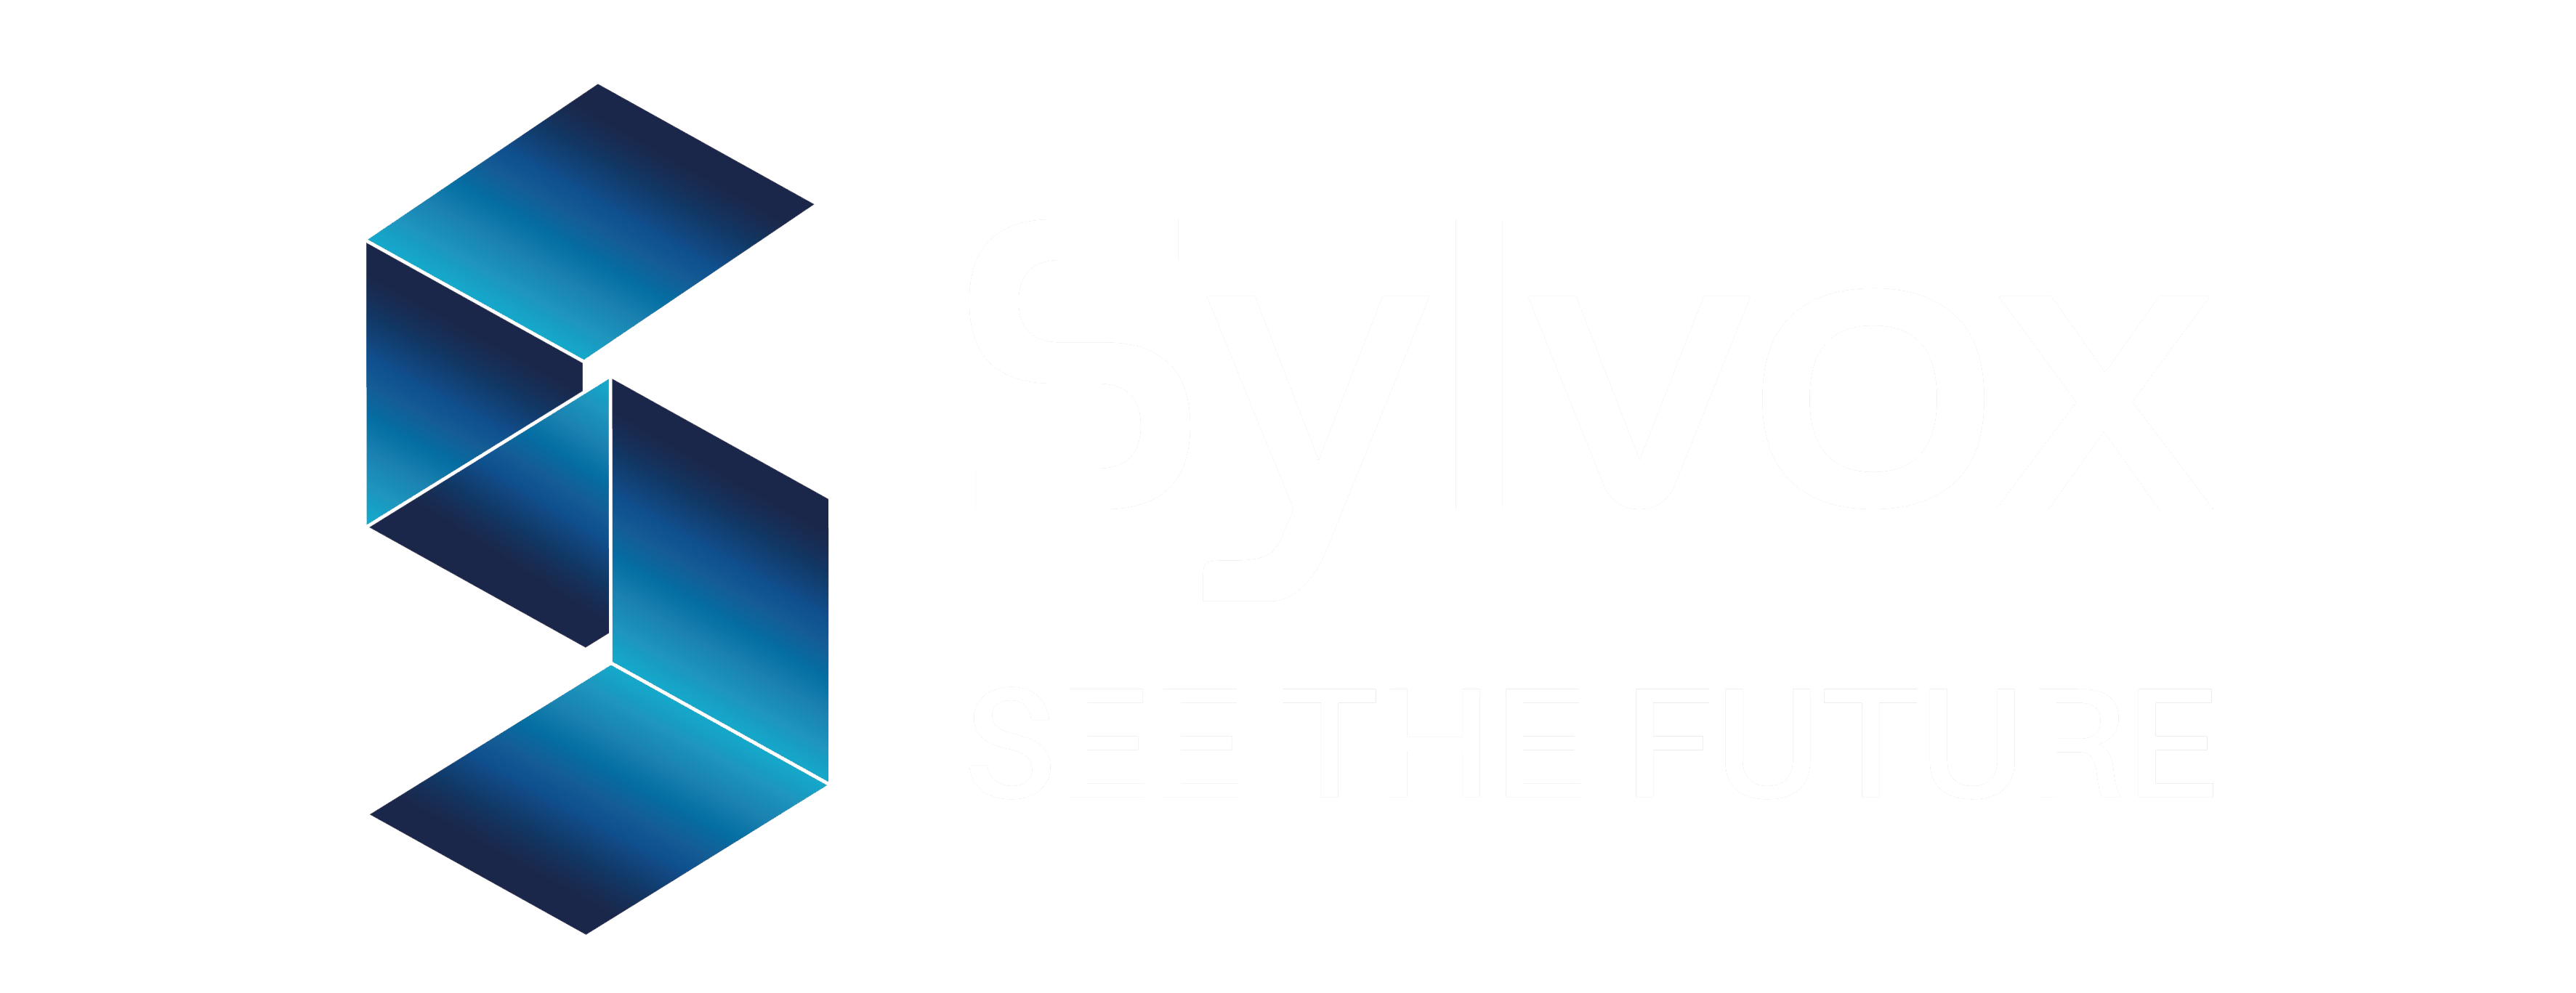 Sylvox